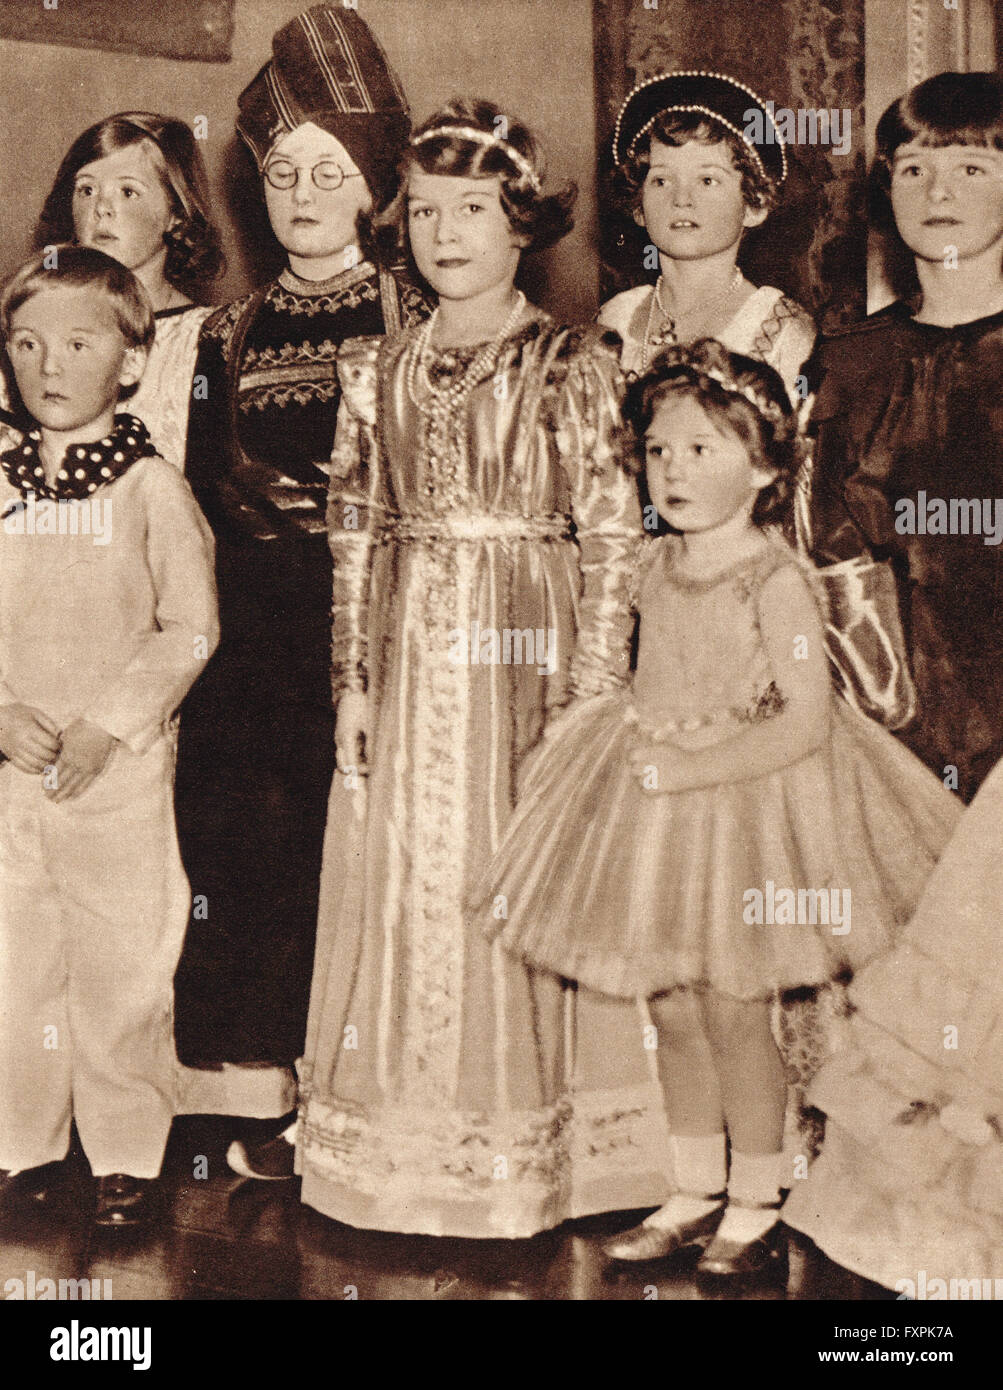 La Princesa Isabel, la futura reina Isabel II, en una fiesta de disfraces con su hermana Margaret en 1934 Foto de stock